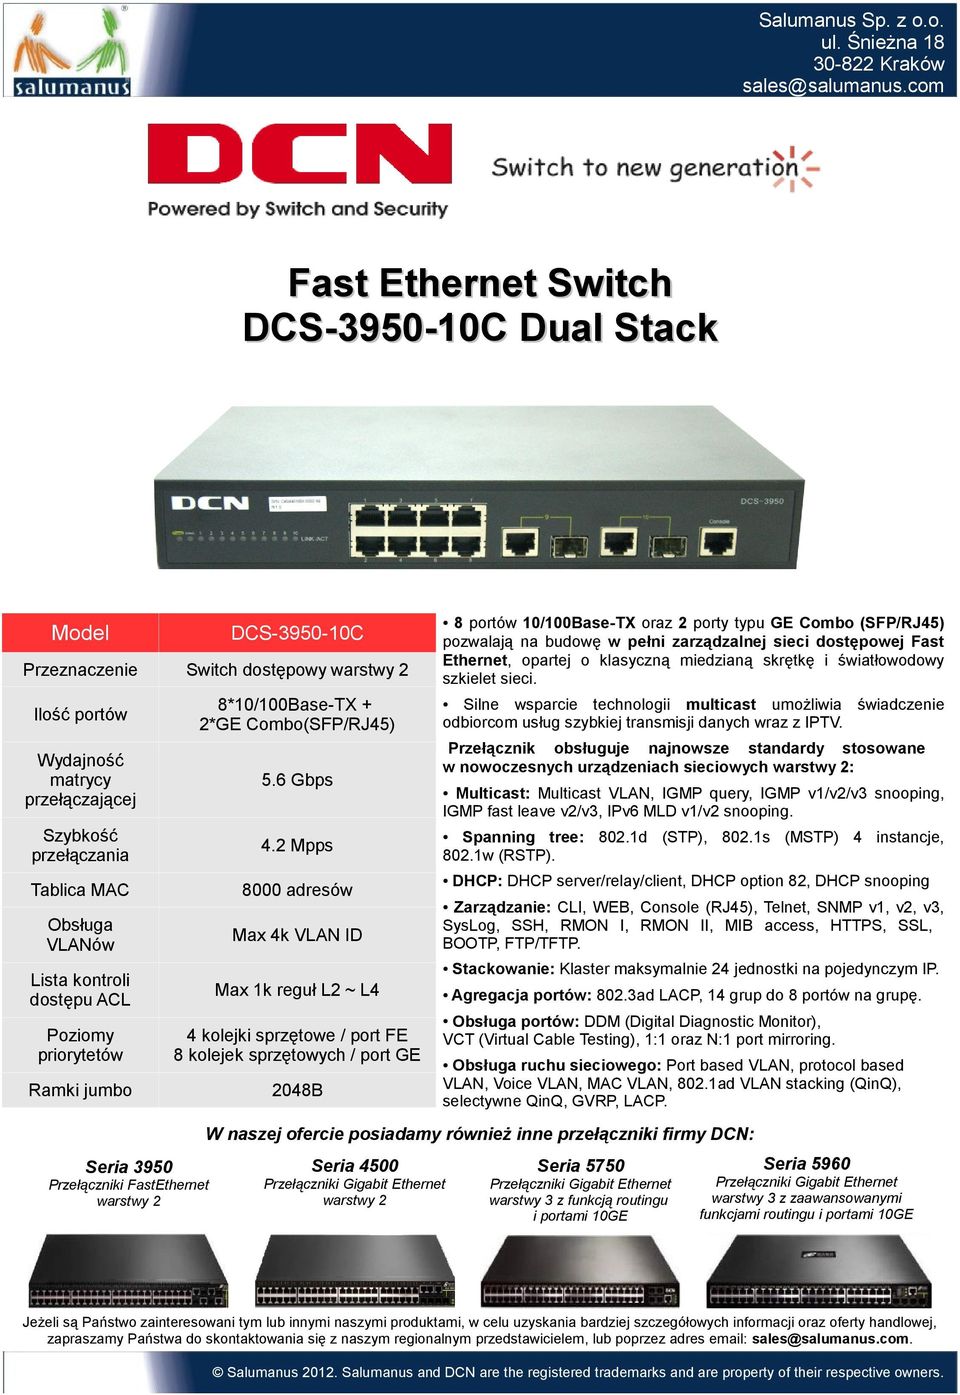 Ethernet, opartej o klasyczną miedzianą skrętkę i światłowodowy szkielet sieci. Przełącznik obsługuje najnowsze standardy stosowane w nowoczesnych urządzeniach sieciowych : Spanning tree: 802.